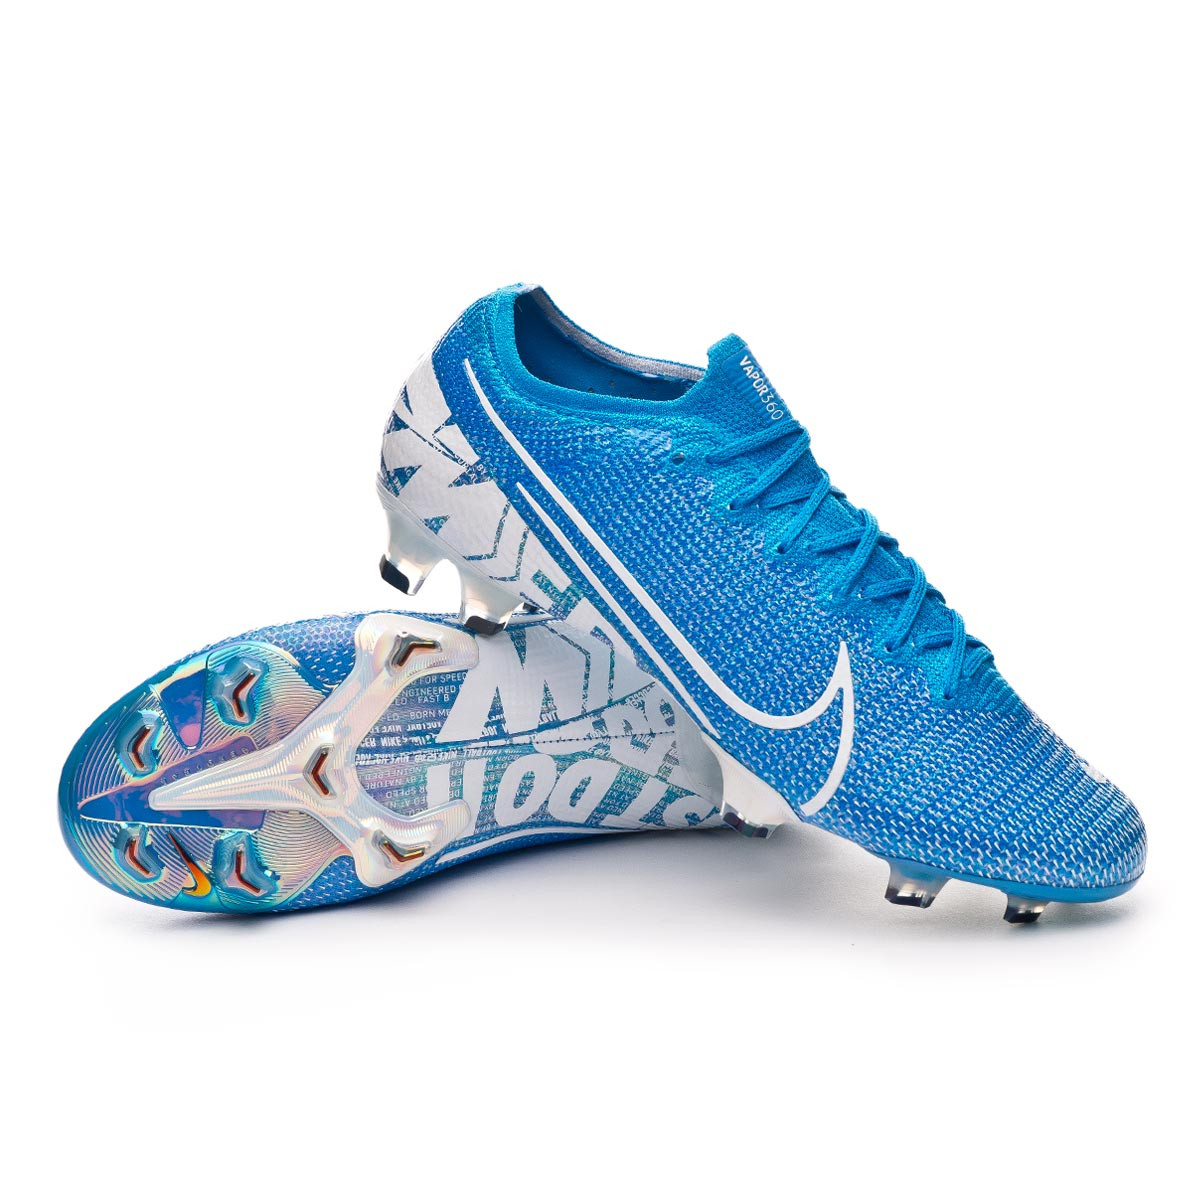 Bota de fútbol Nike Mercurial Vapor XIII Elite FG Blue hero-White-Obsidian  - Tienda de fútbol Fútbol Emotion